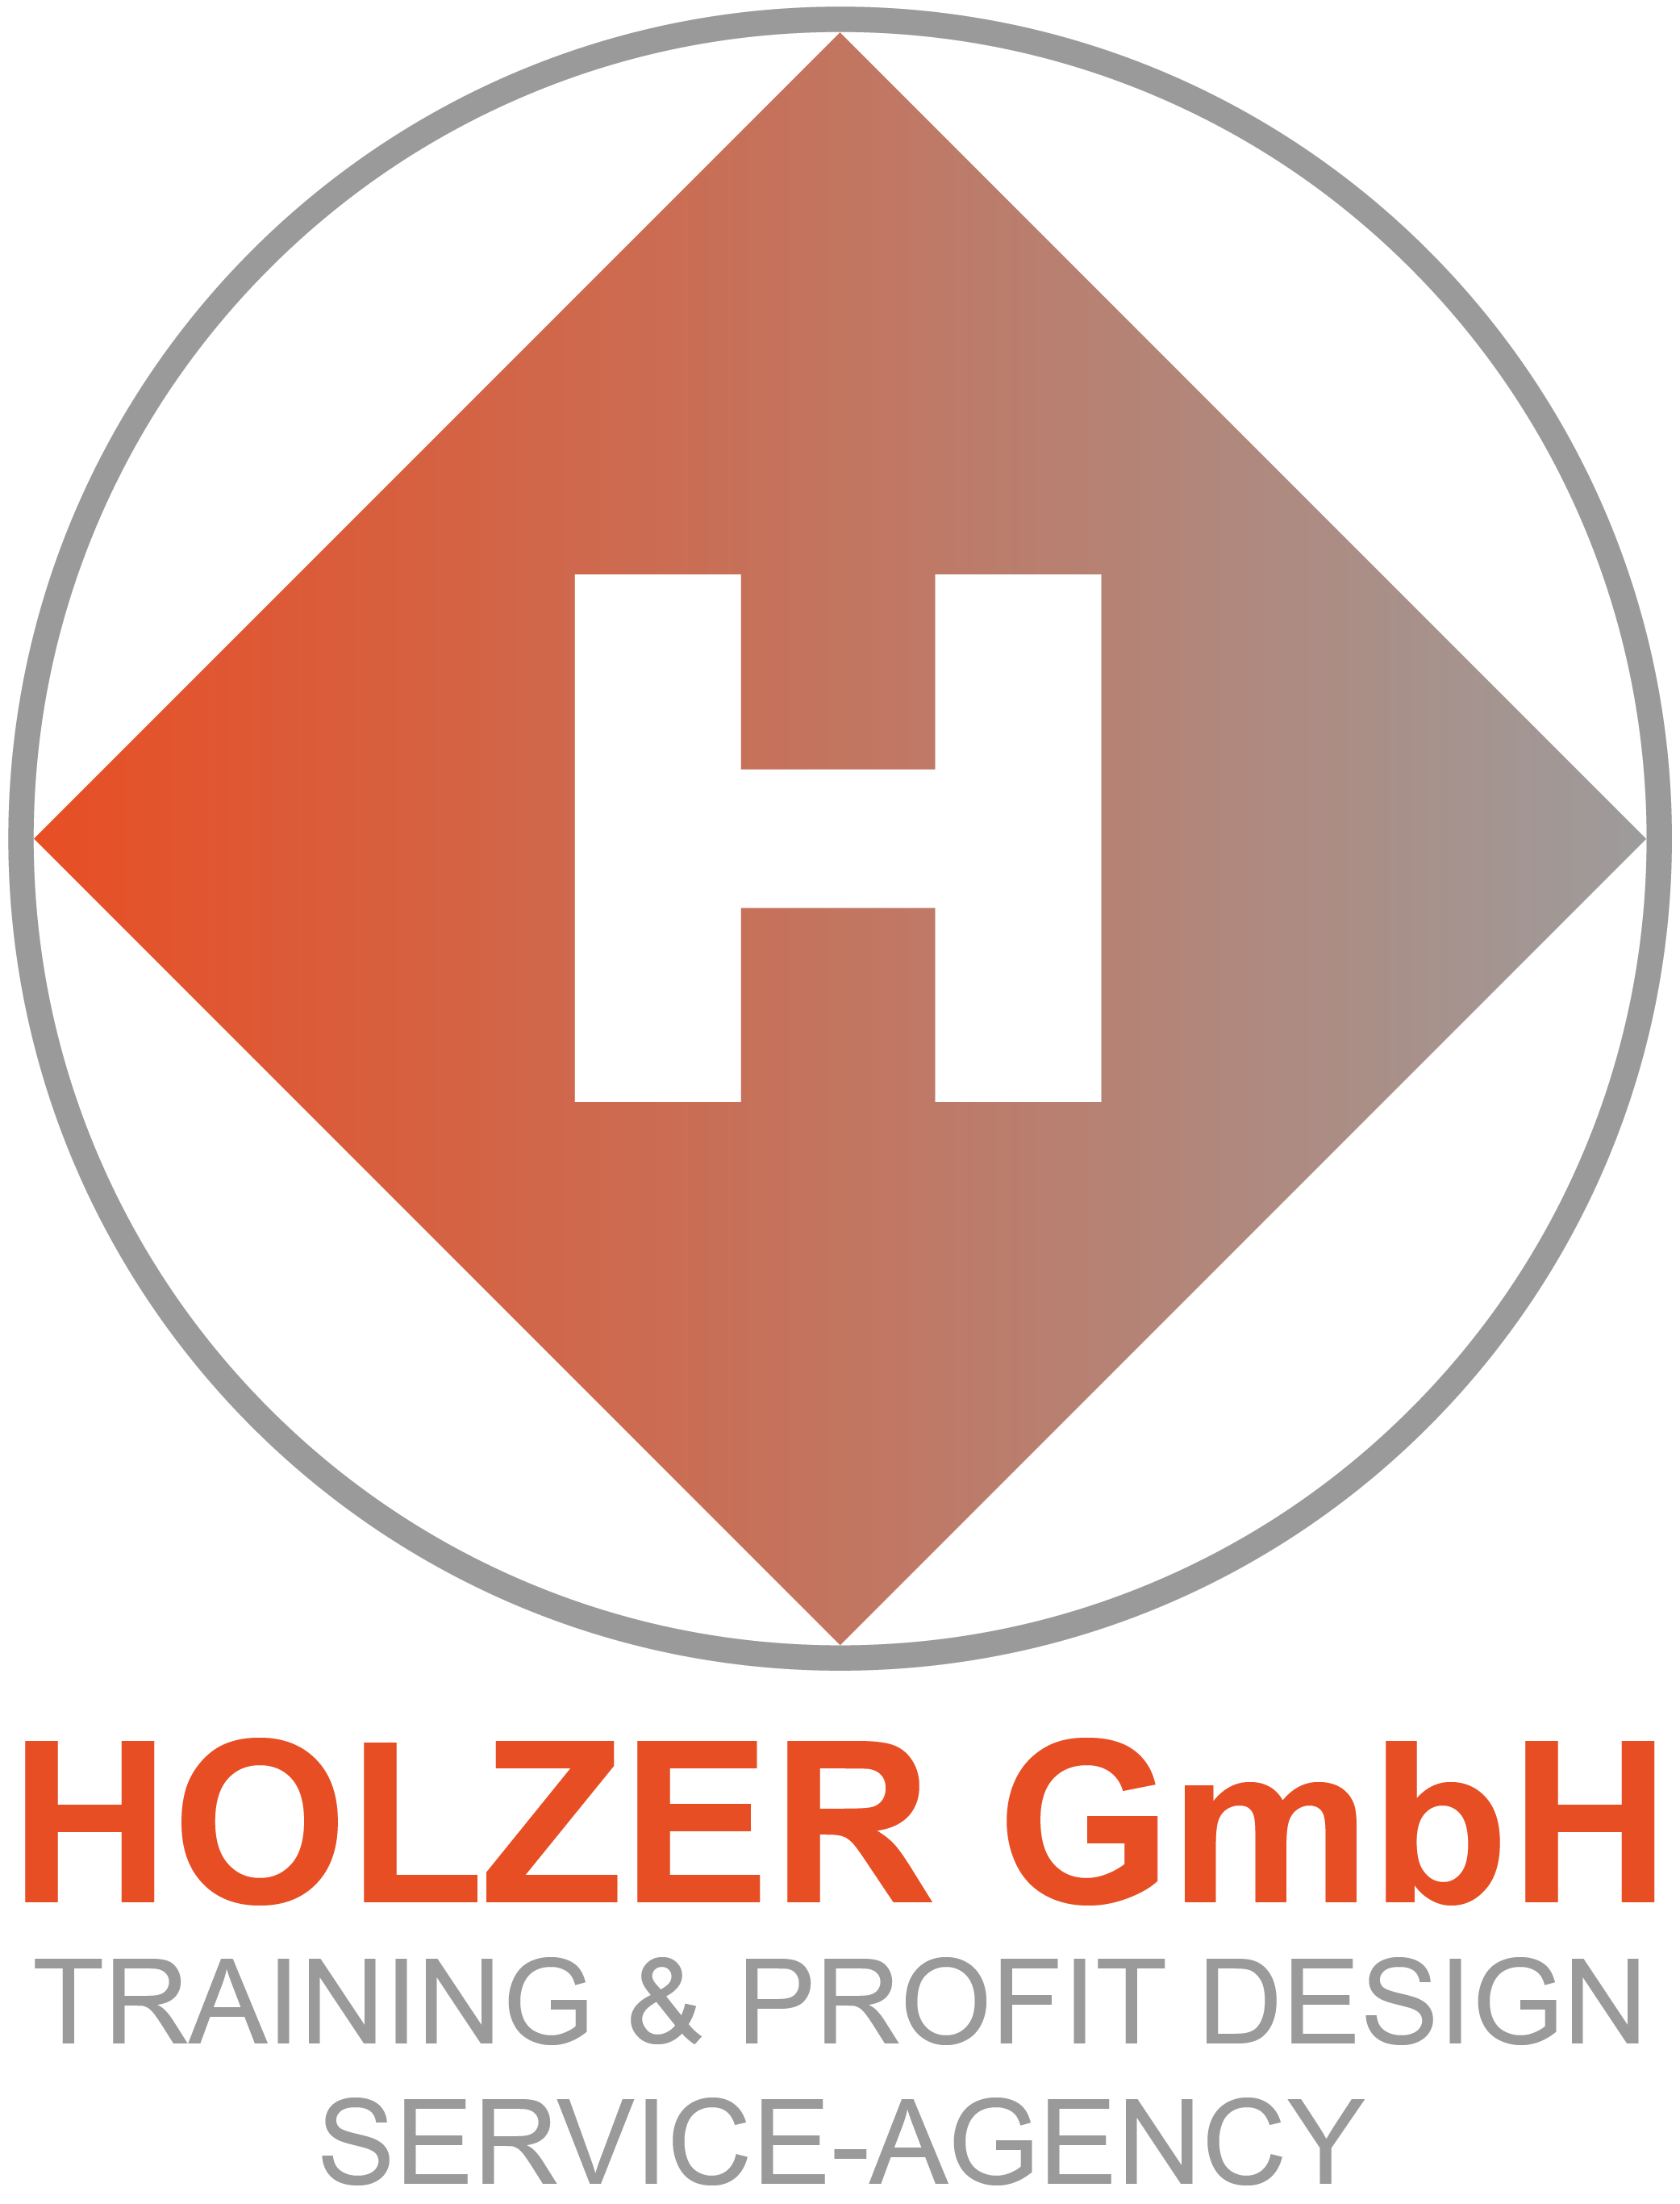 Holzer GmbH Logo